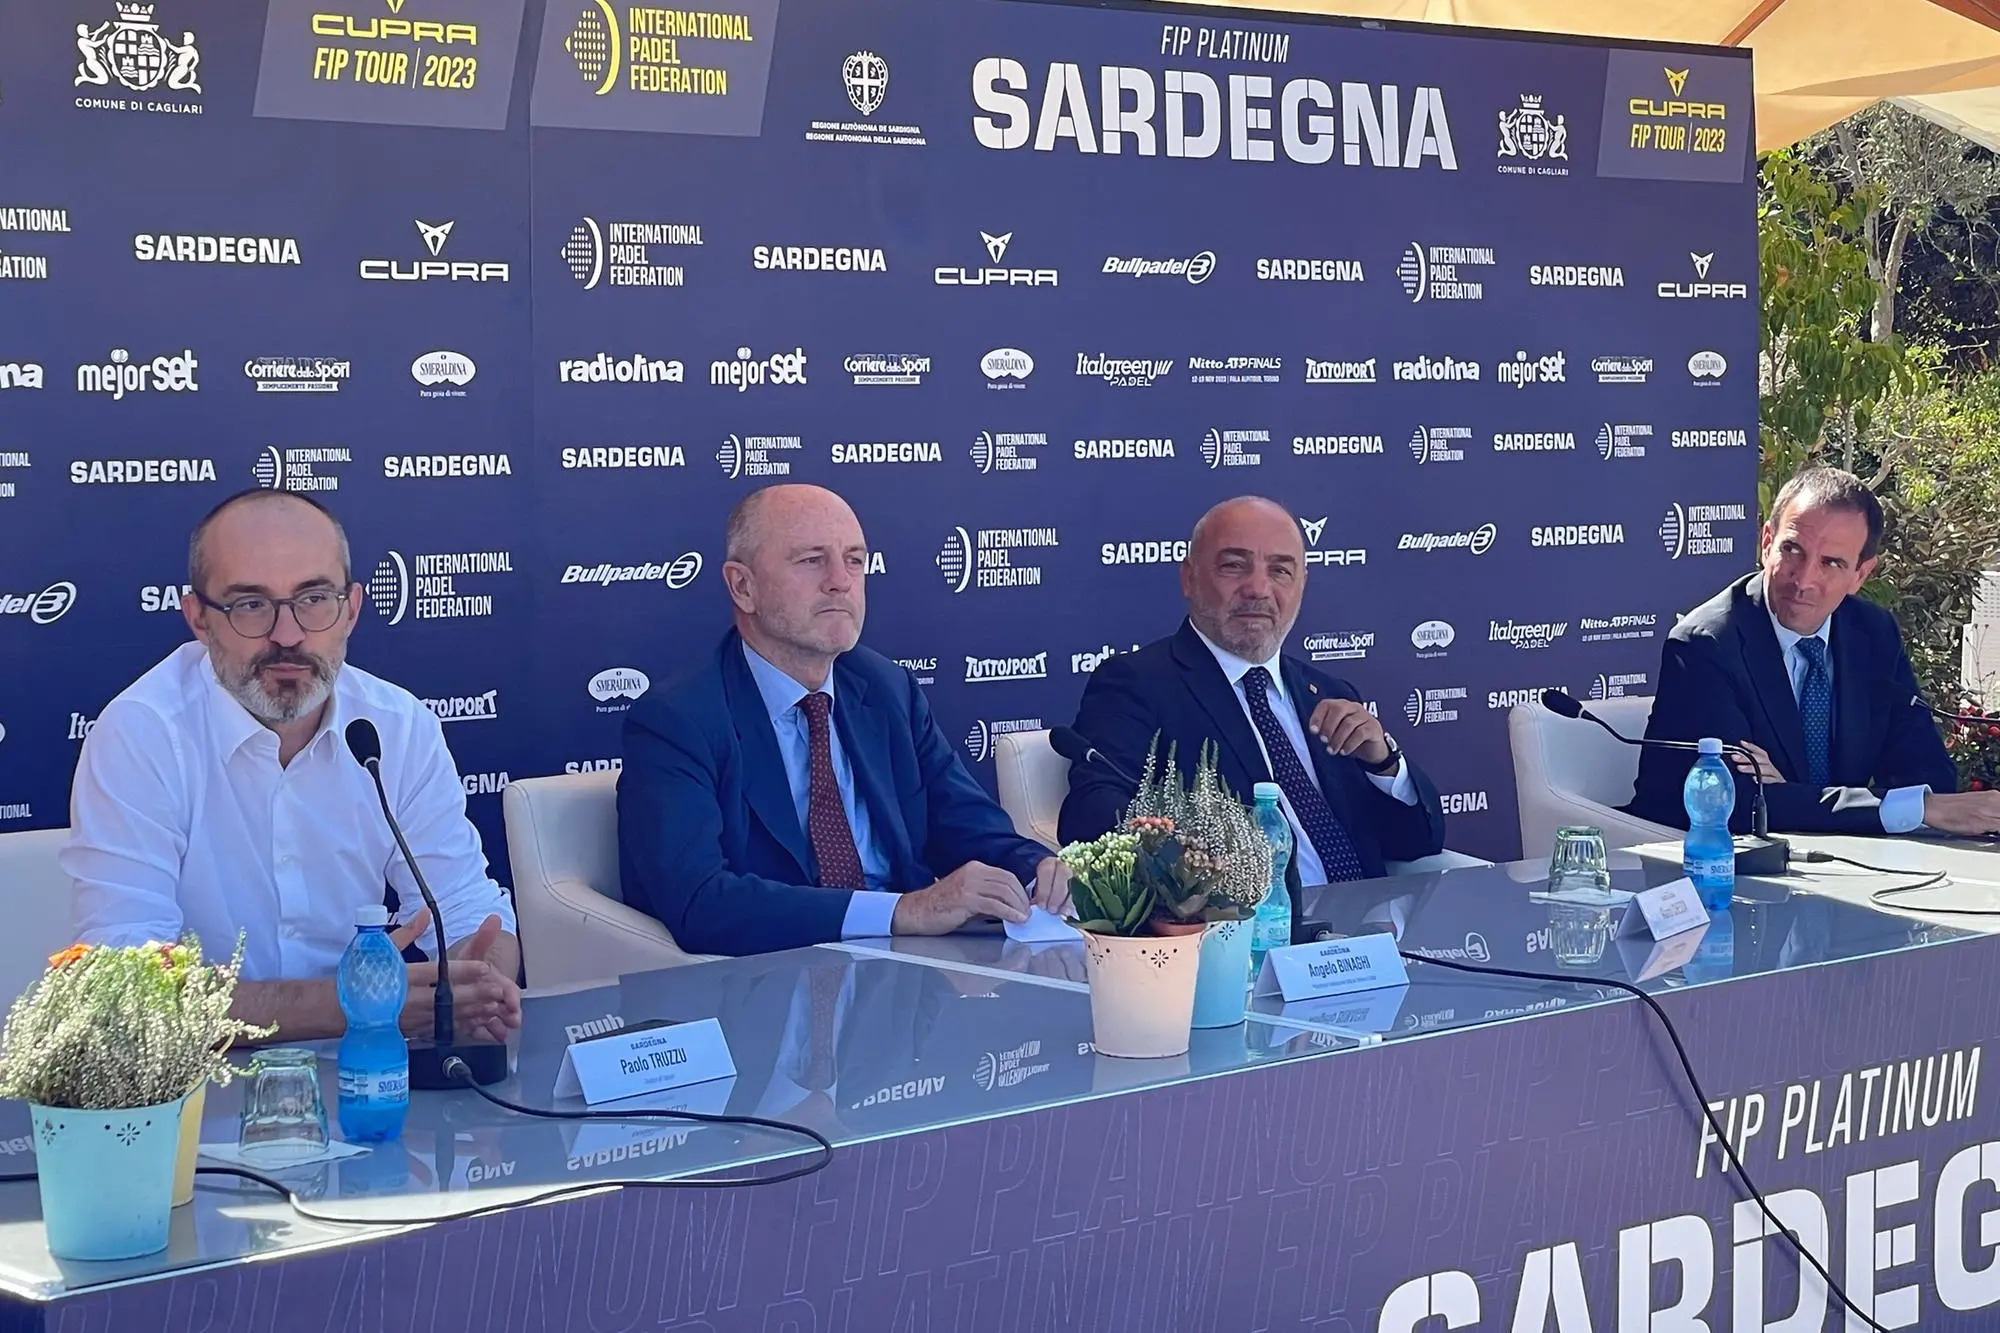 La conferenza stampa di presentazione del Fip Platinum Sardegna al Tennis Club Cagliari (foto Spignesi)